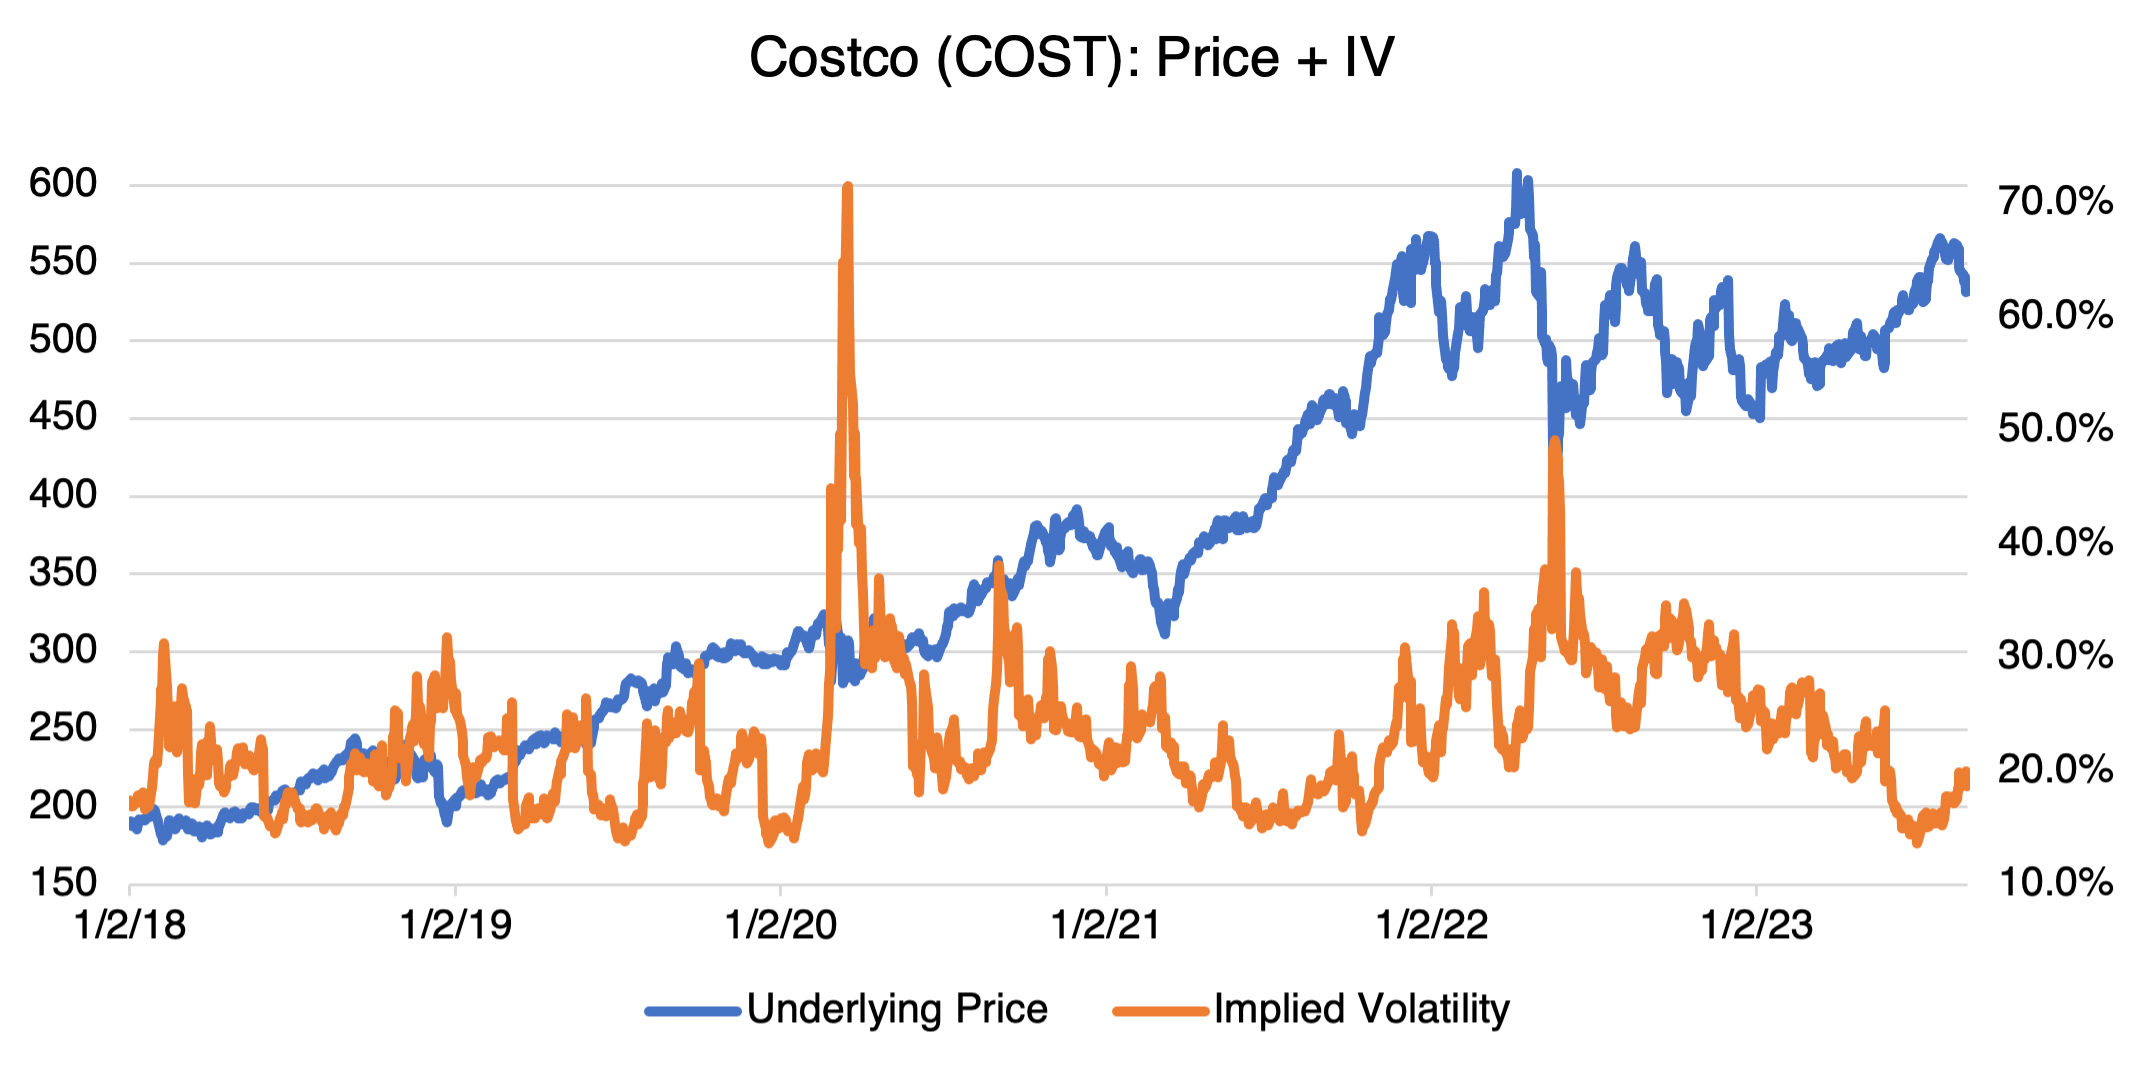 Costco Price + IV